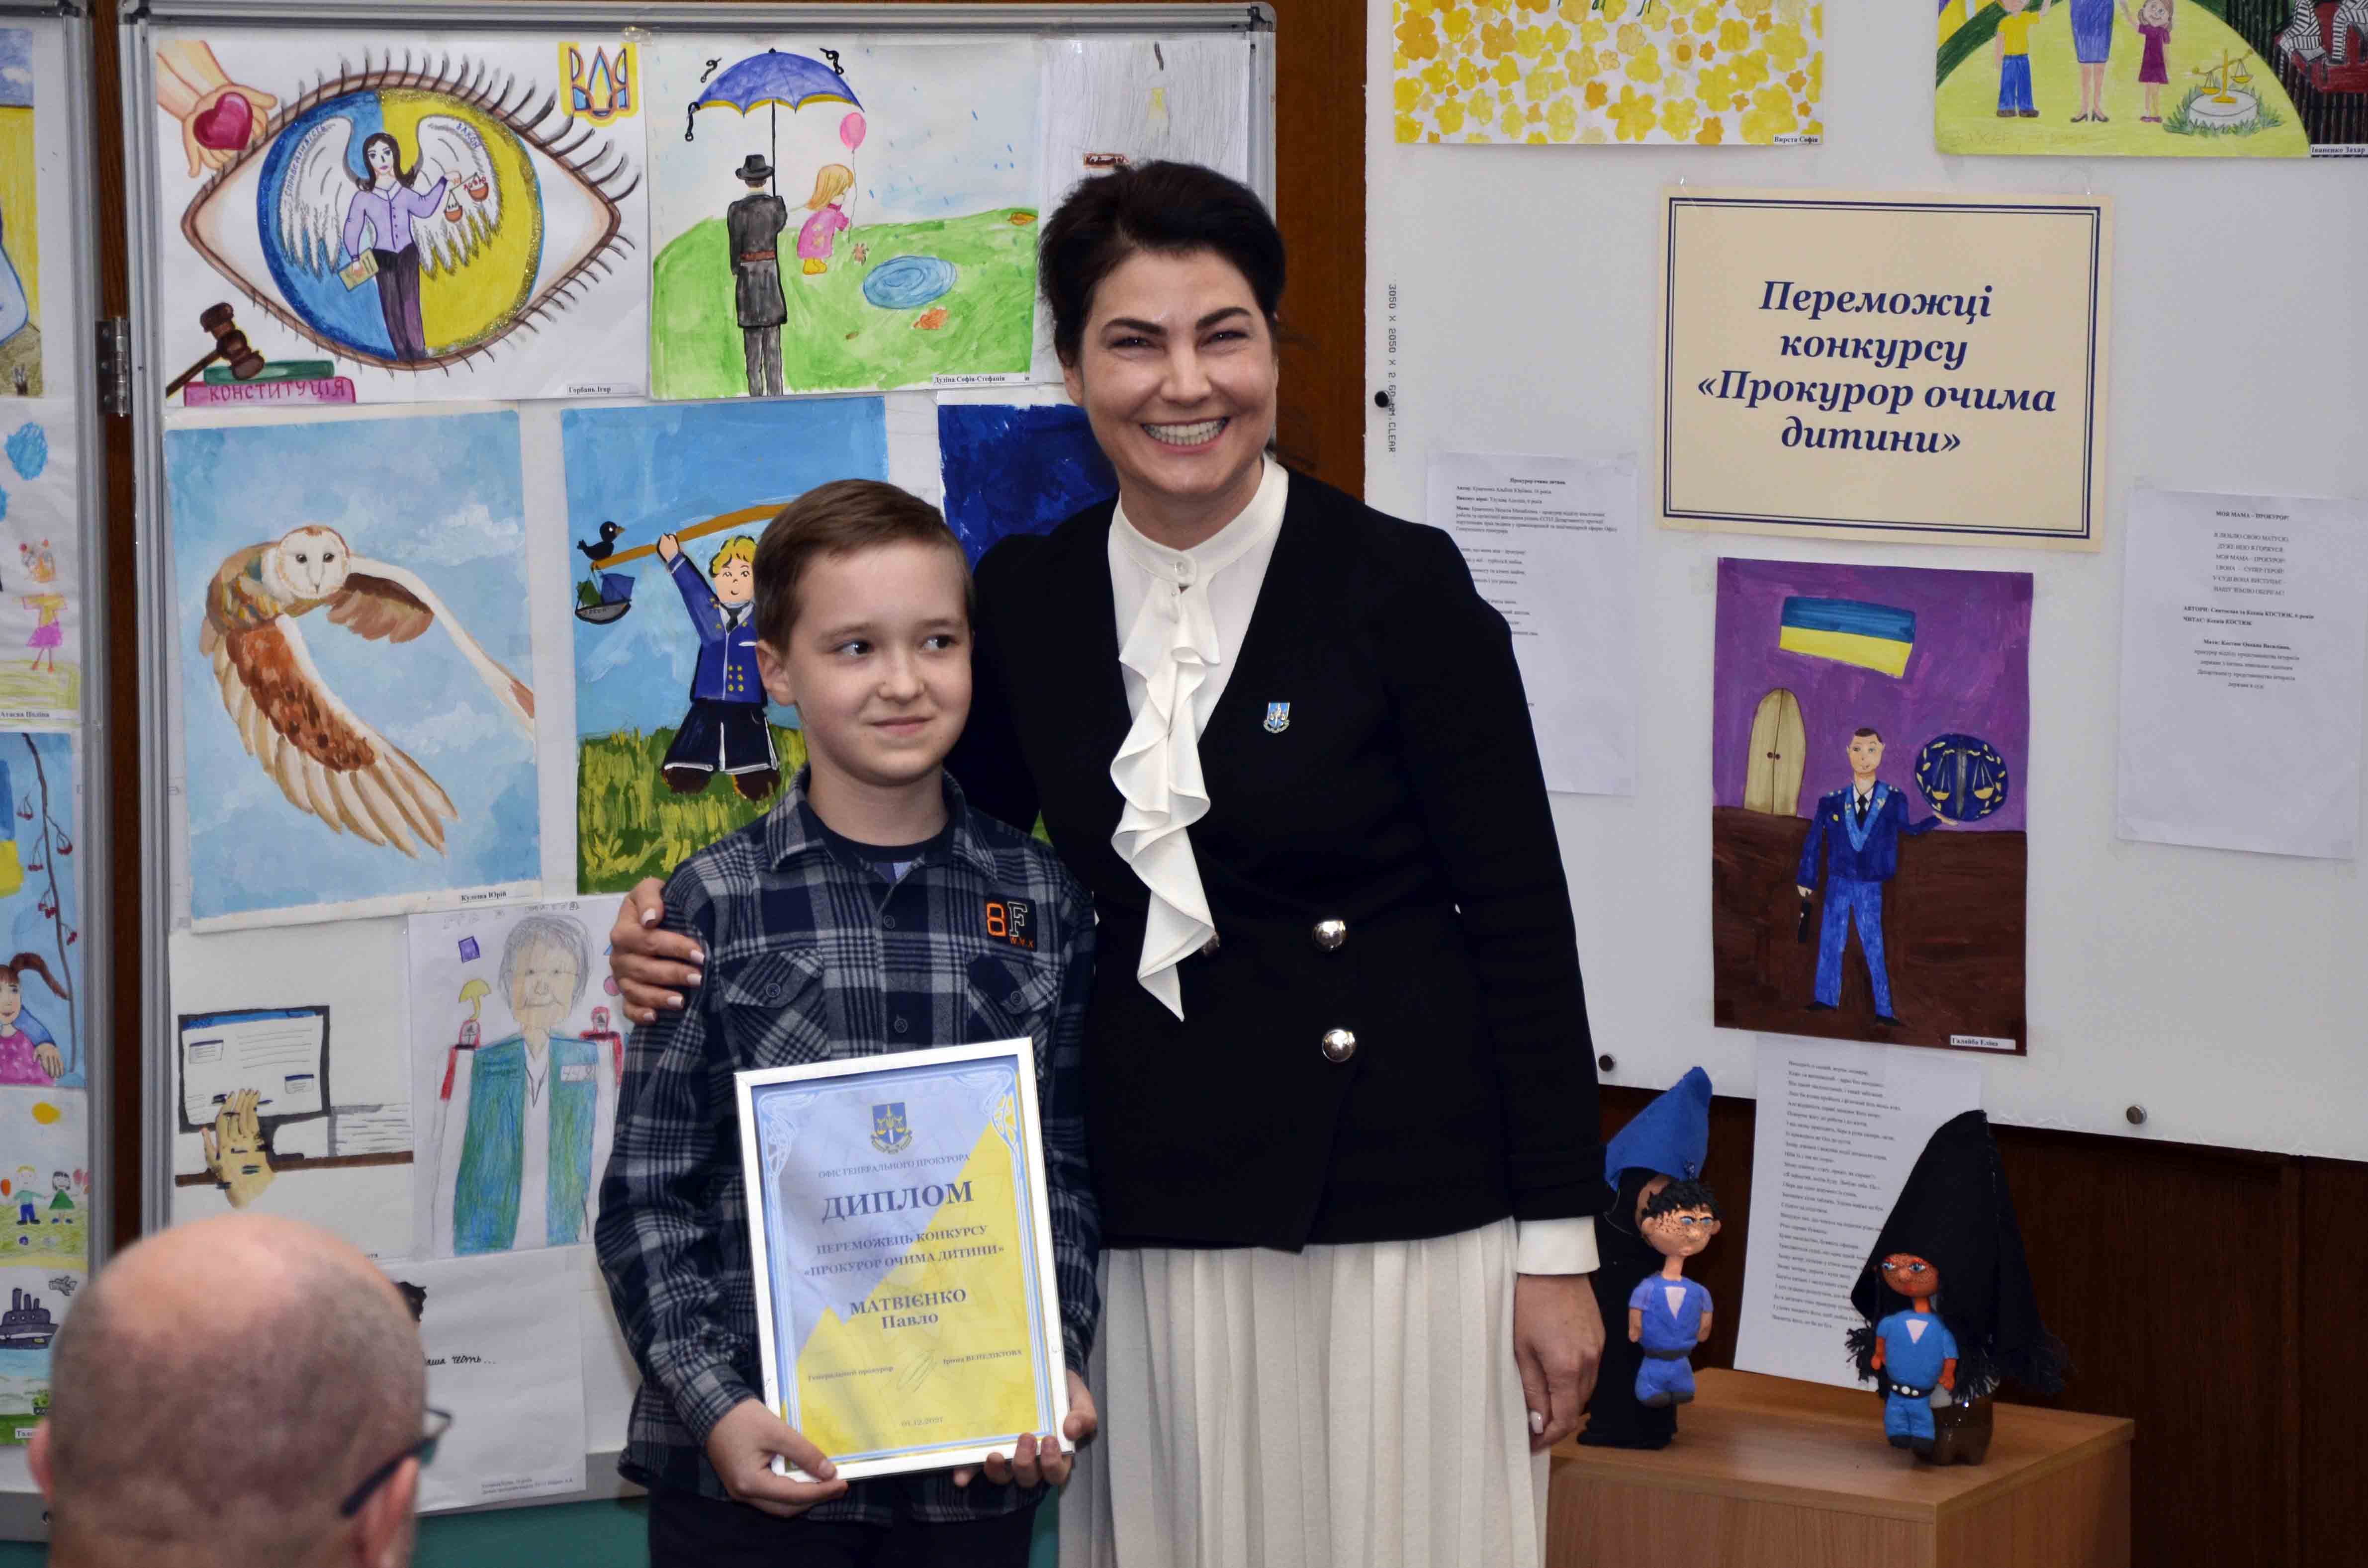 Ірина Венедіктова привітала дітей-переможців конкурсу «Прокурор очима дитини»